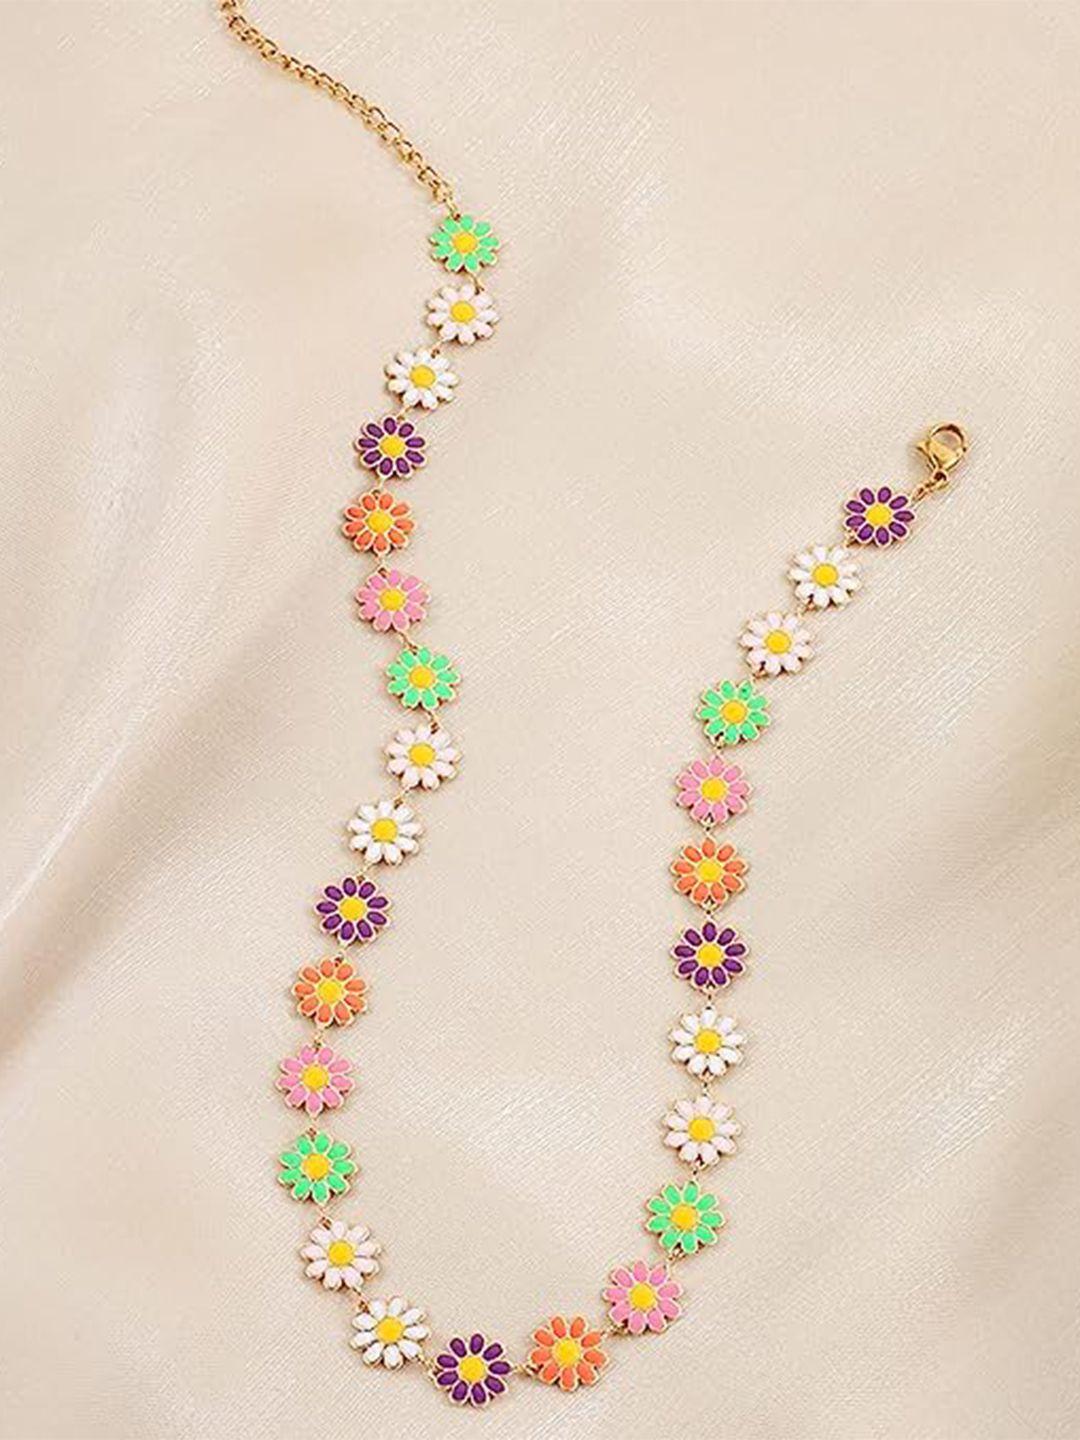 el regalo floral minimal necklace with lobster closure